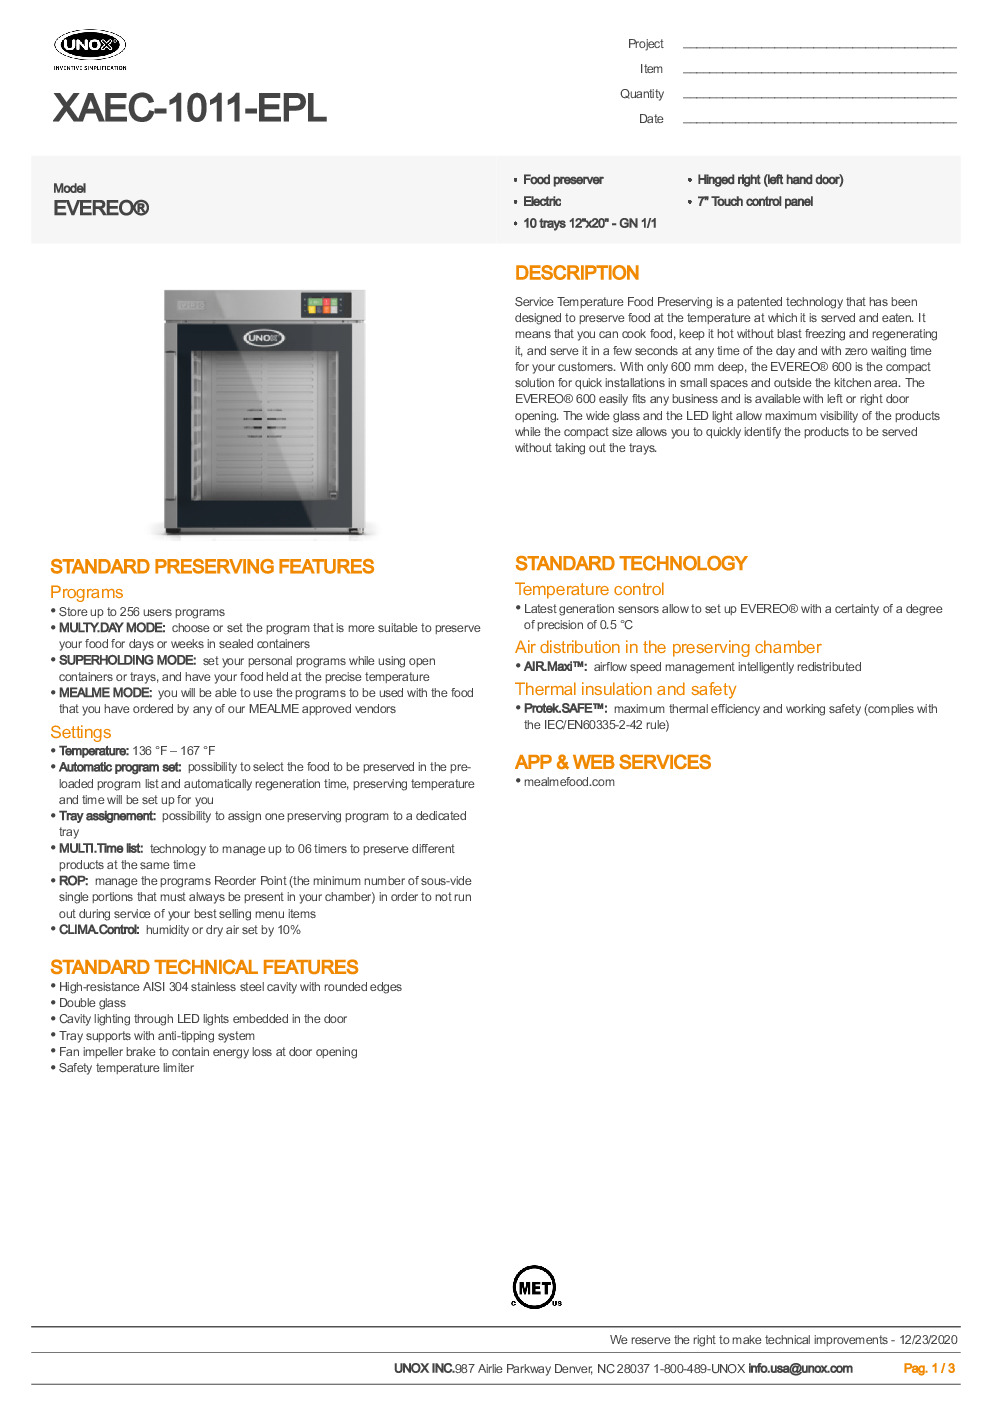 UNOX XAEC-1011-EPL Reach-In Combi Oven/Food Preserver